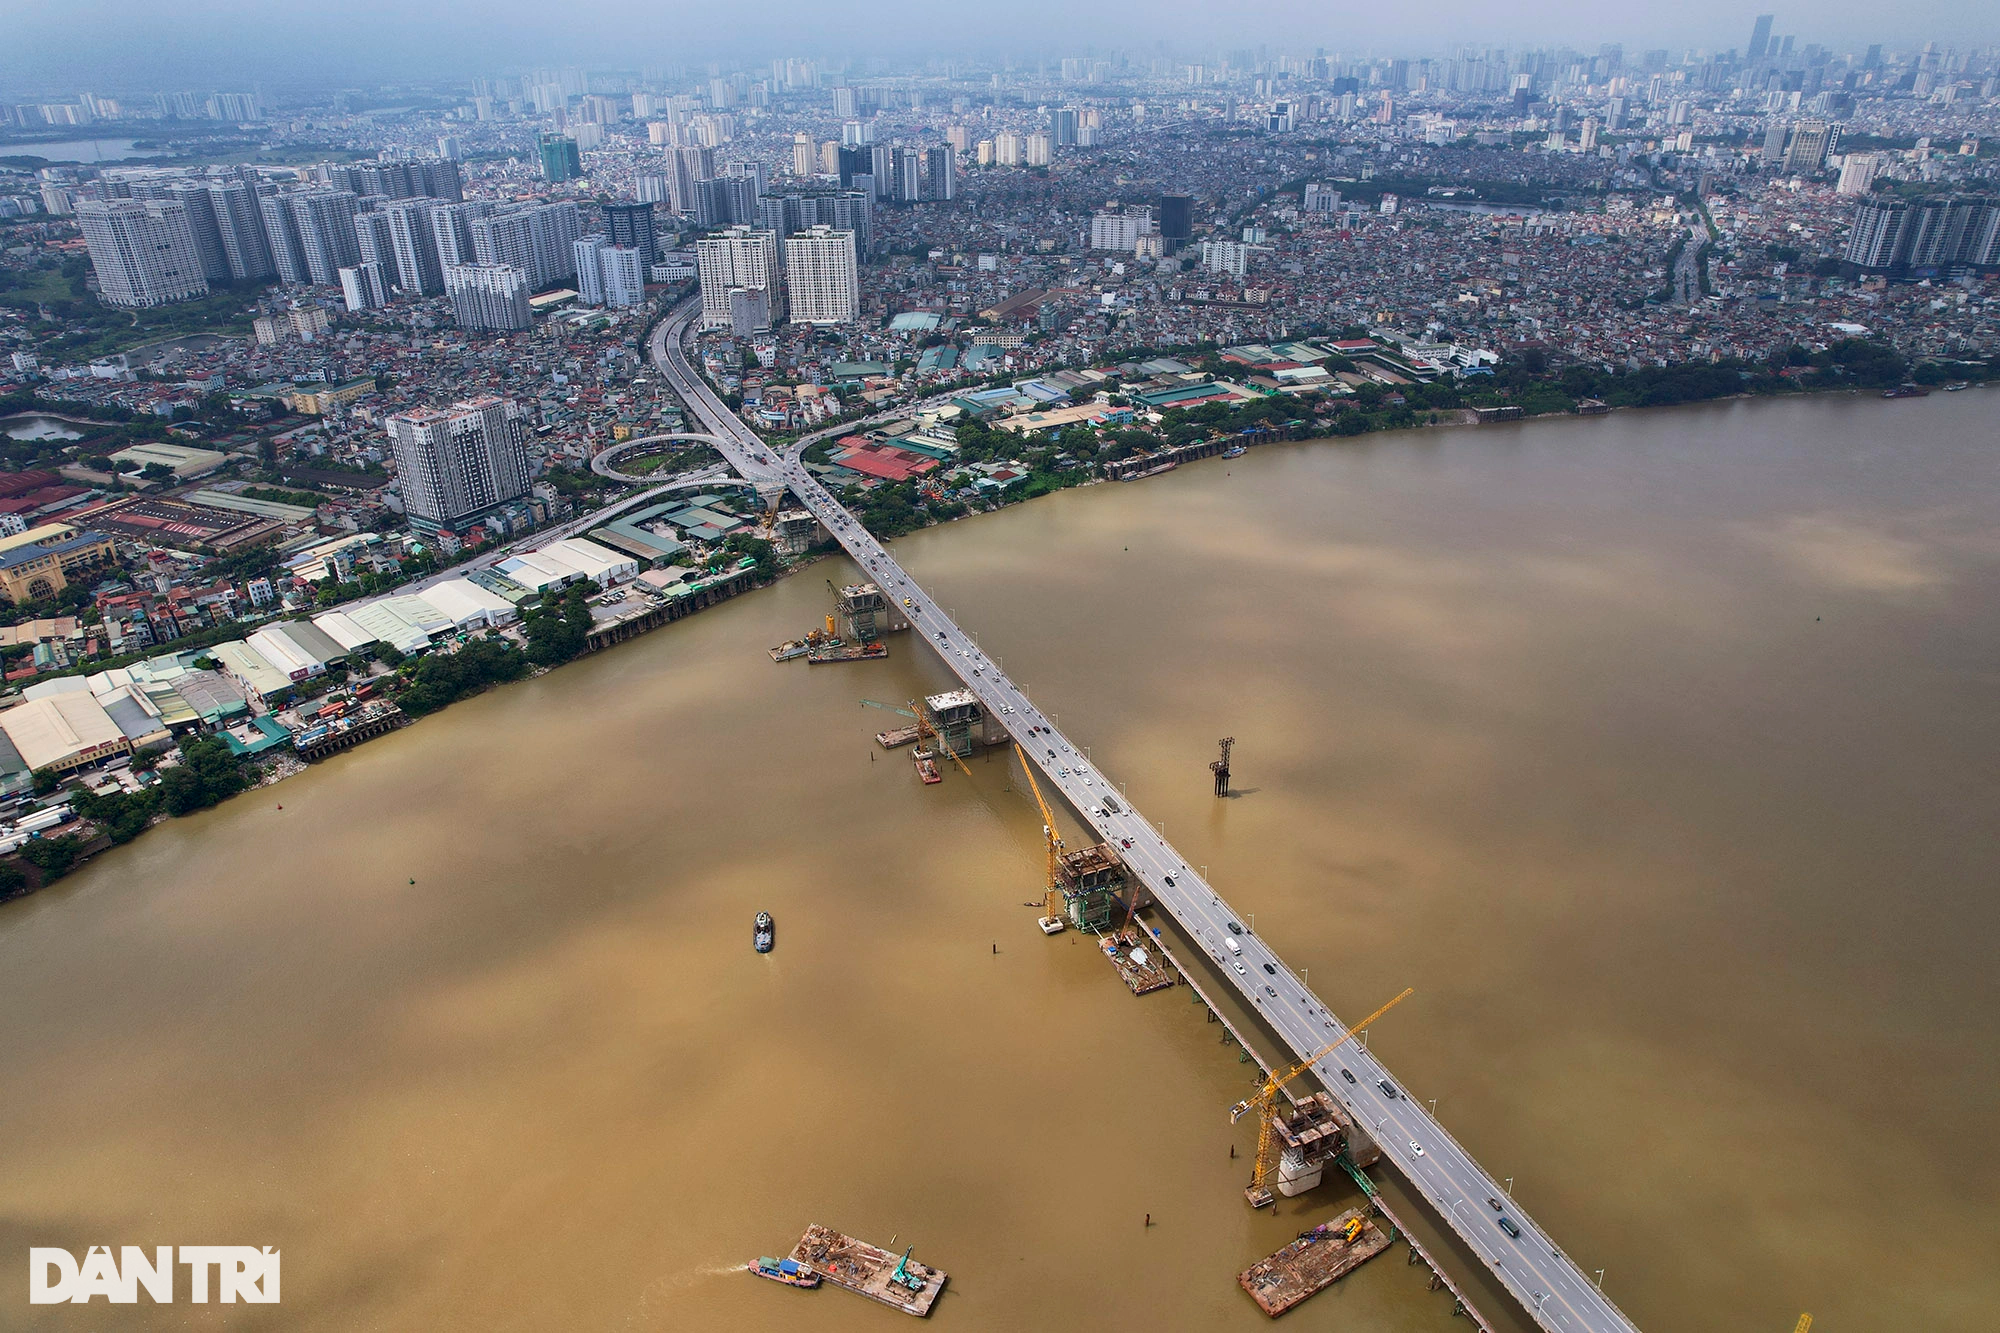 Ngắm 6 cầu qua sông Hồng tại Hà Nội - 17